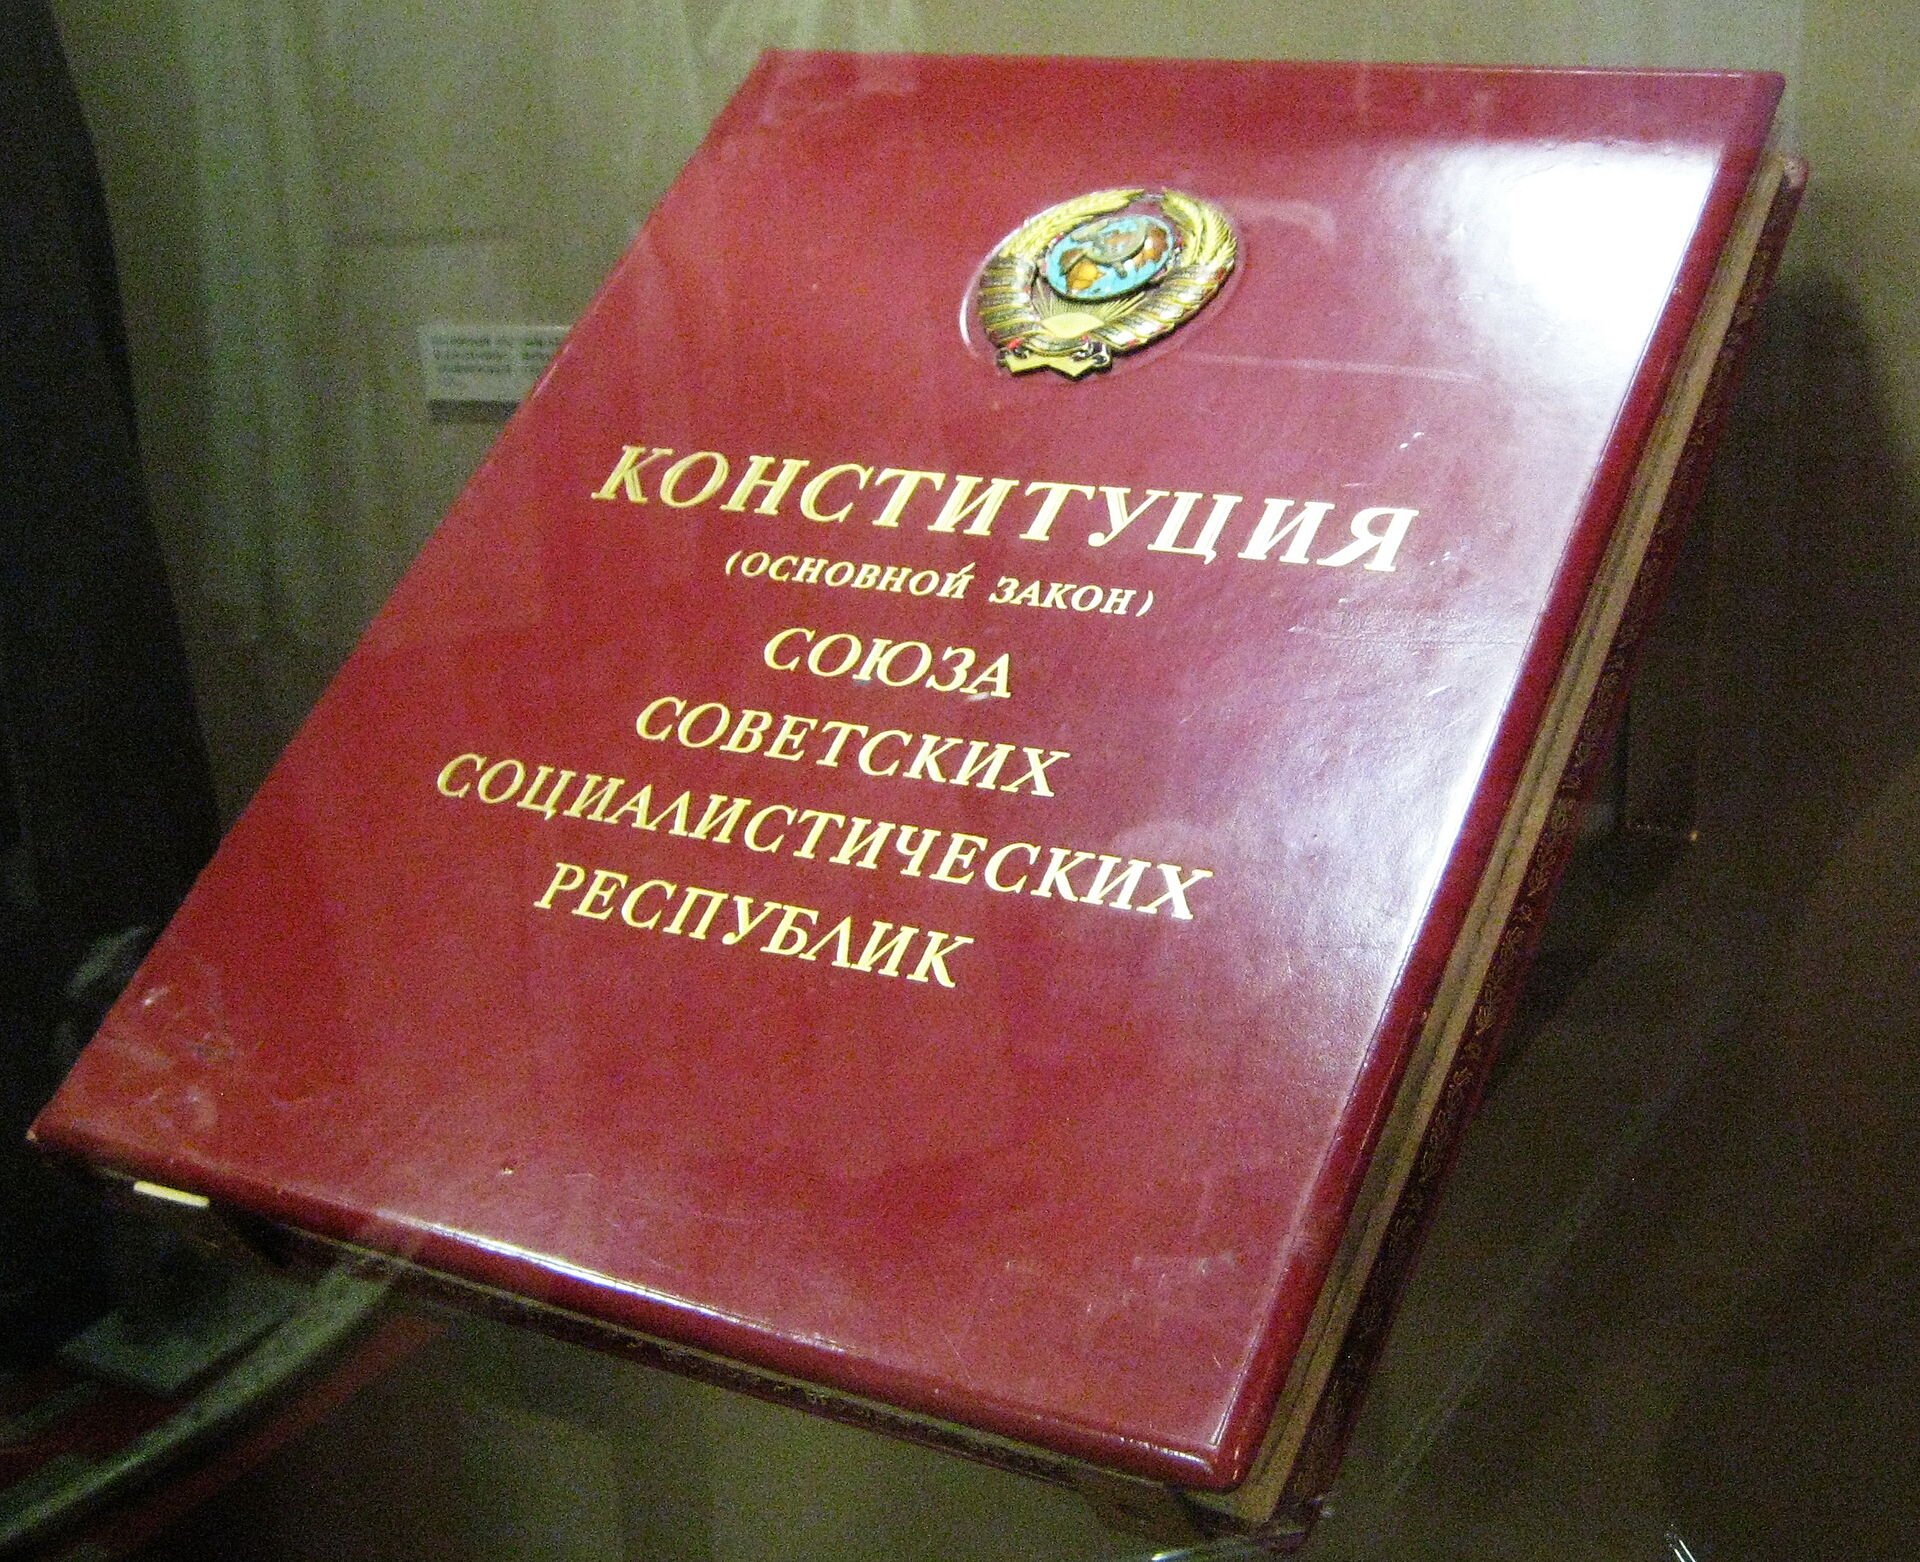 Zdjęcie przedstawia dużą, czerwoną księgę z tytułem w języku rosyjskim.